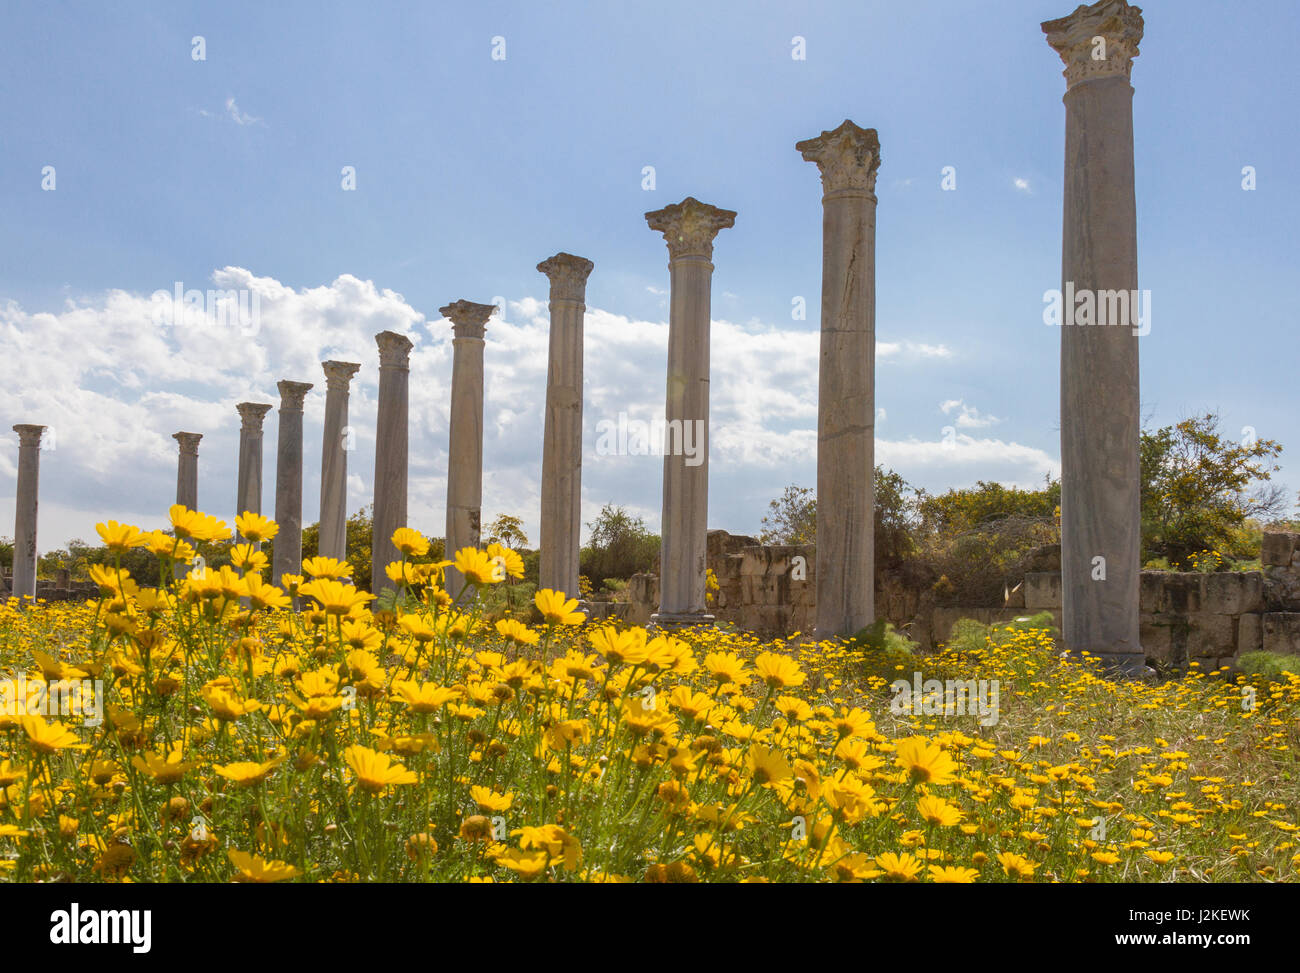 Ruinen der antiken römischen Stadt von Salamis in der Nähe von Famagusta auf Zypern mit gelben Daisiy Blumen im Vordergrund Stockfoto